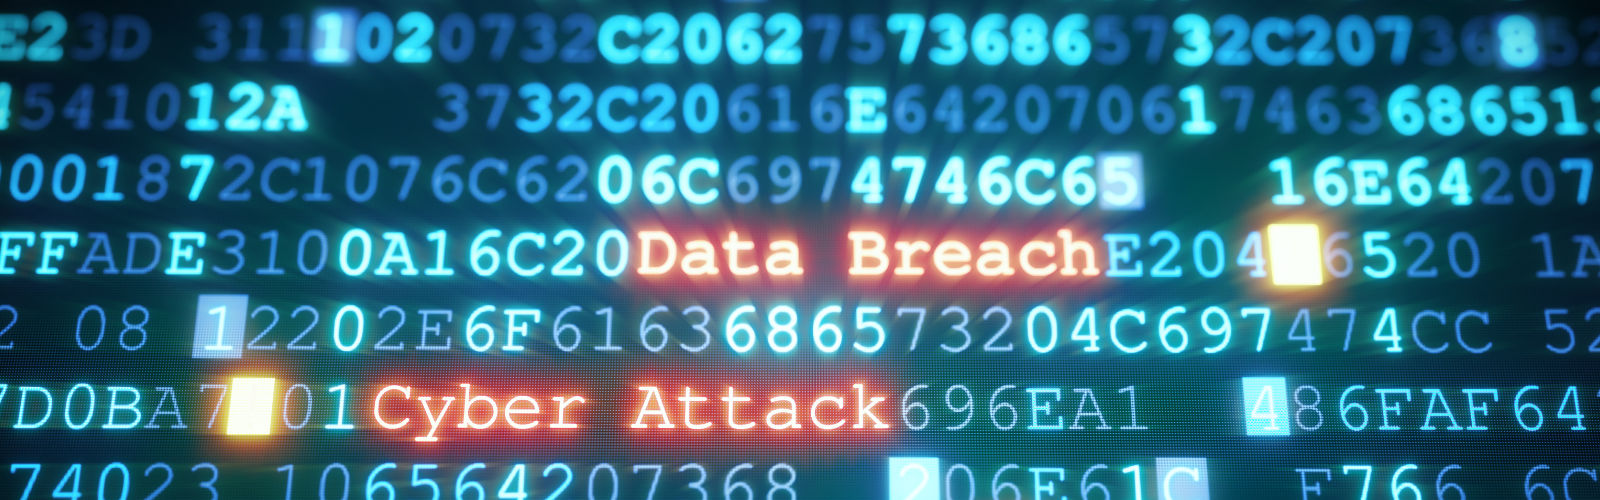 Symbolbild: Data Breach und Cyber Attack in roten Lettern stechen aus einem in blau gehaltenen Code hervor